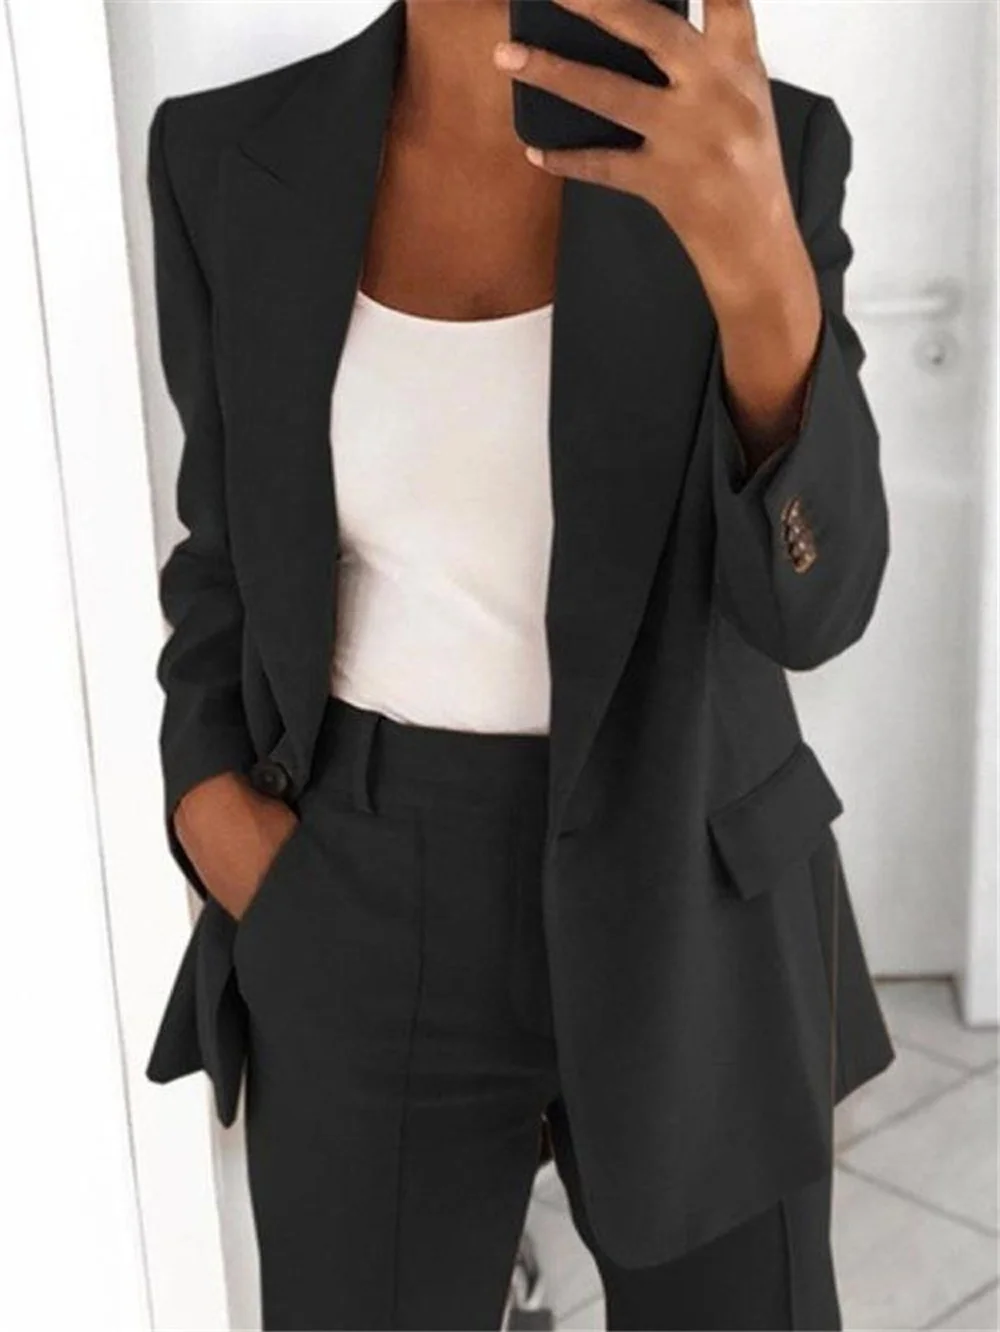 Women's Casual Business Open Front Long Sleeve Notch Lapel Office Blazer Jacket